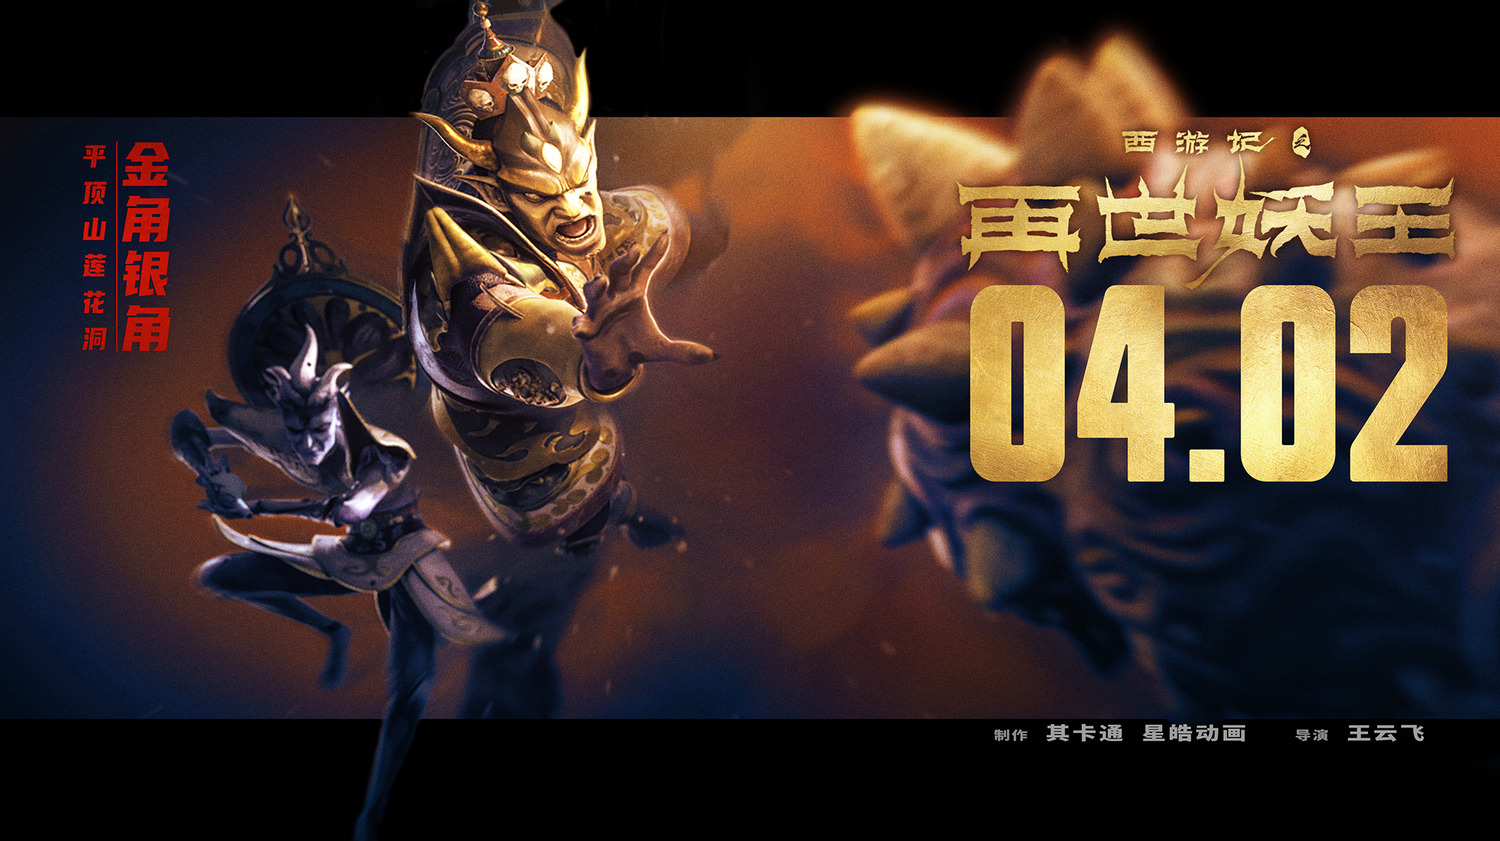 Extra Large Movie Poster Image for Xi You Ji Zhi Zai Shi Yao Wang (#5 of 21)